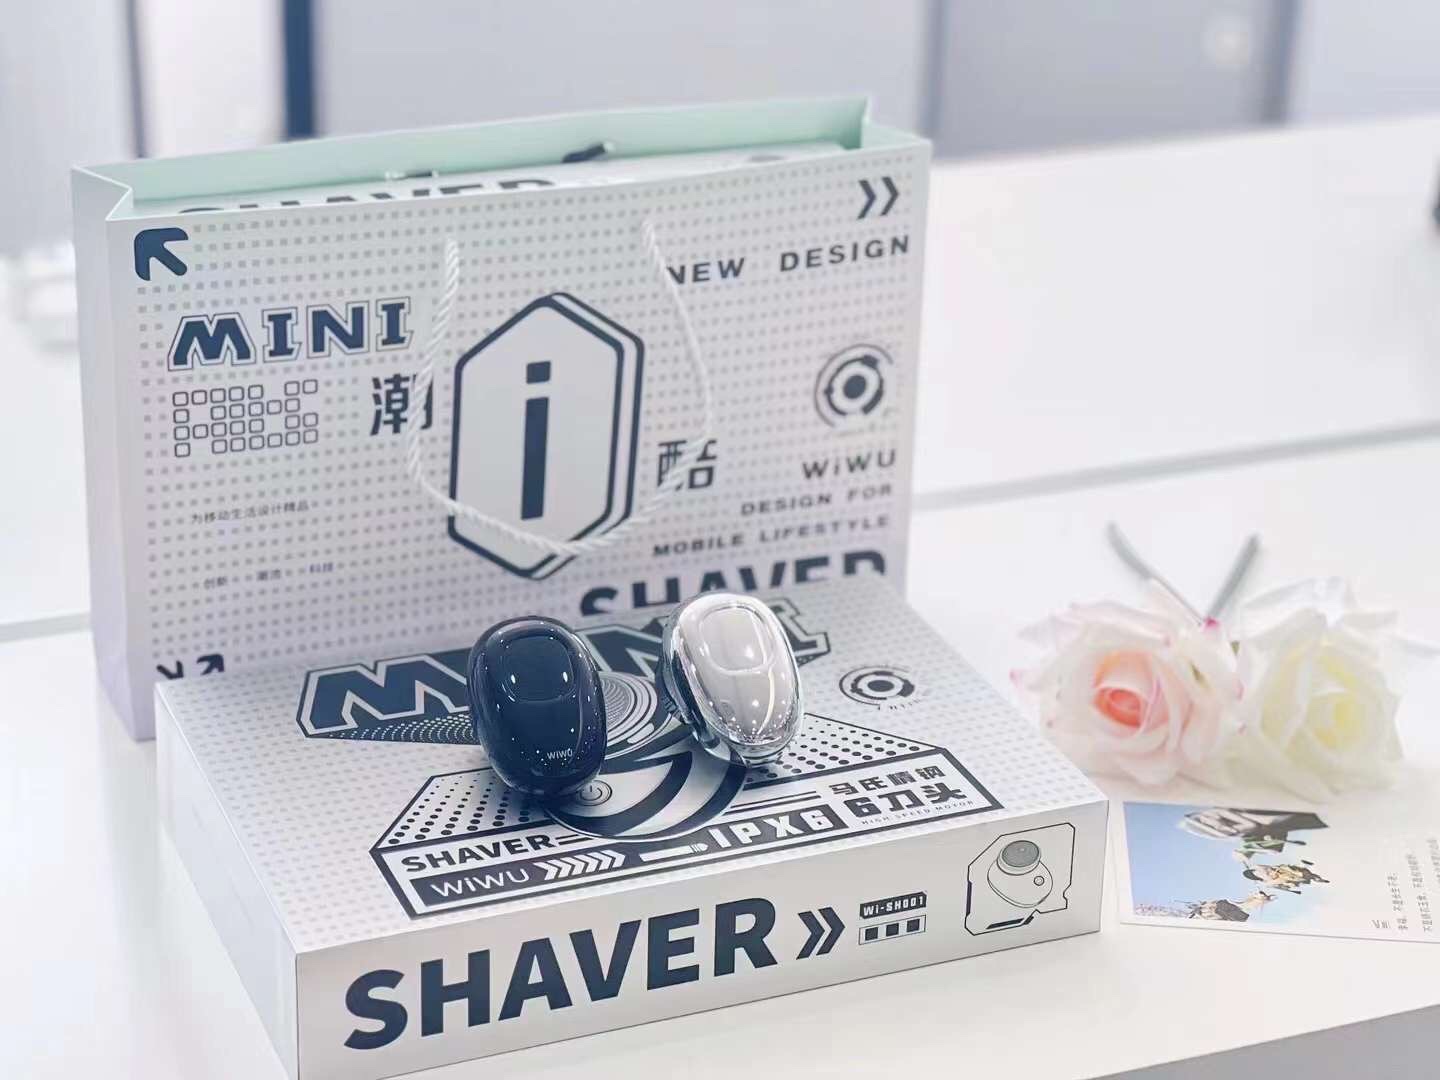 Máy cạo râu điện mini Wiwu Portable Shaver SH001 có cổng sạc chân Type C, IPX không thấm nước, động cơ tốc độ cao, tinh tế và nhỏ gọn - Hàng chính hãng